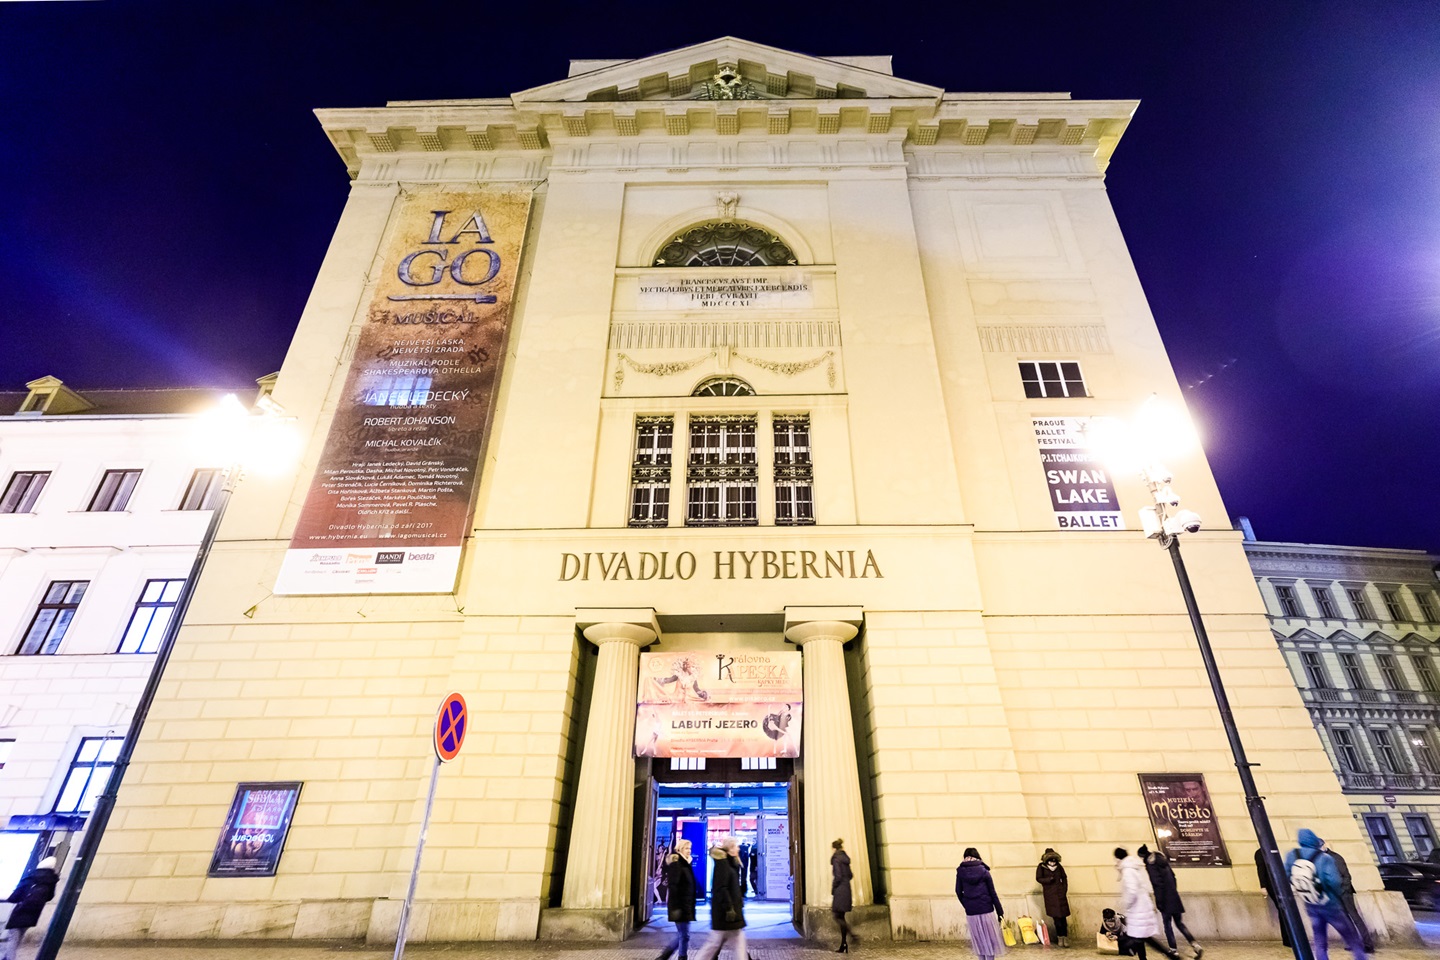 Slavnostně nasvícená budova divadla Hybernia v centru Prahy hostila i akci Sestra roku